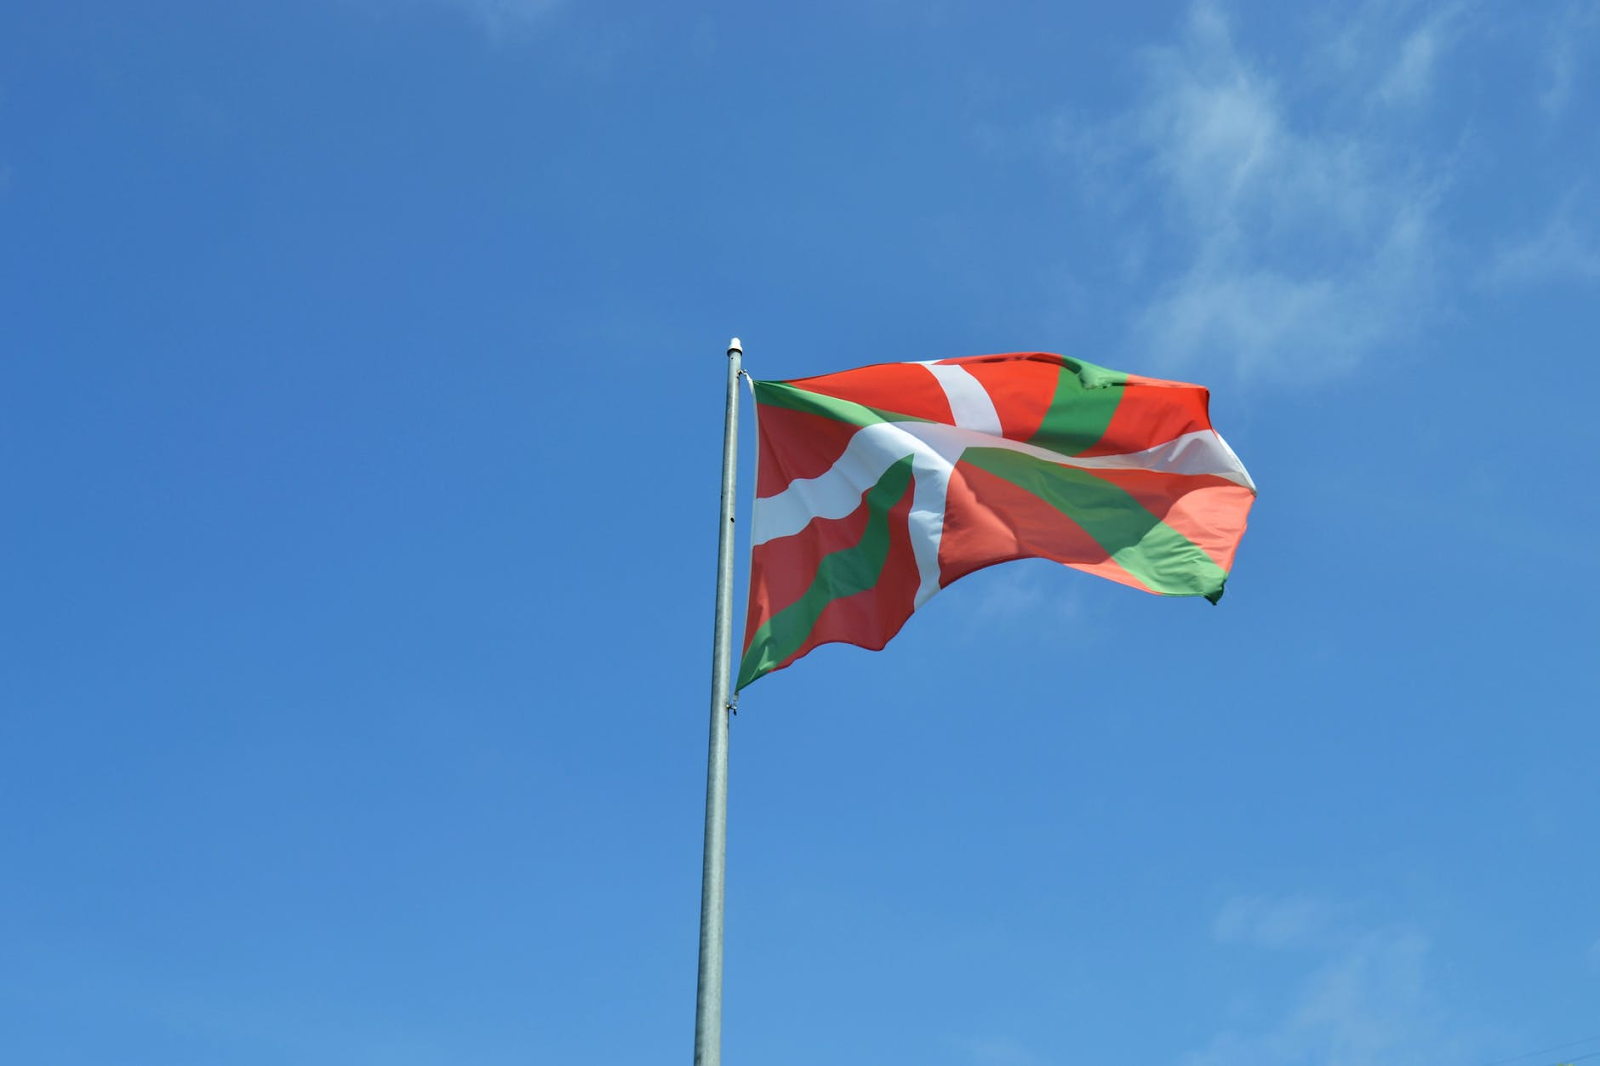 Bandeira do País Basco, ao norte da Espanha e sudoeste da França.